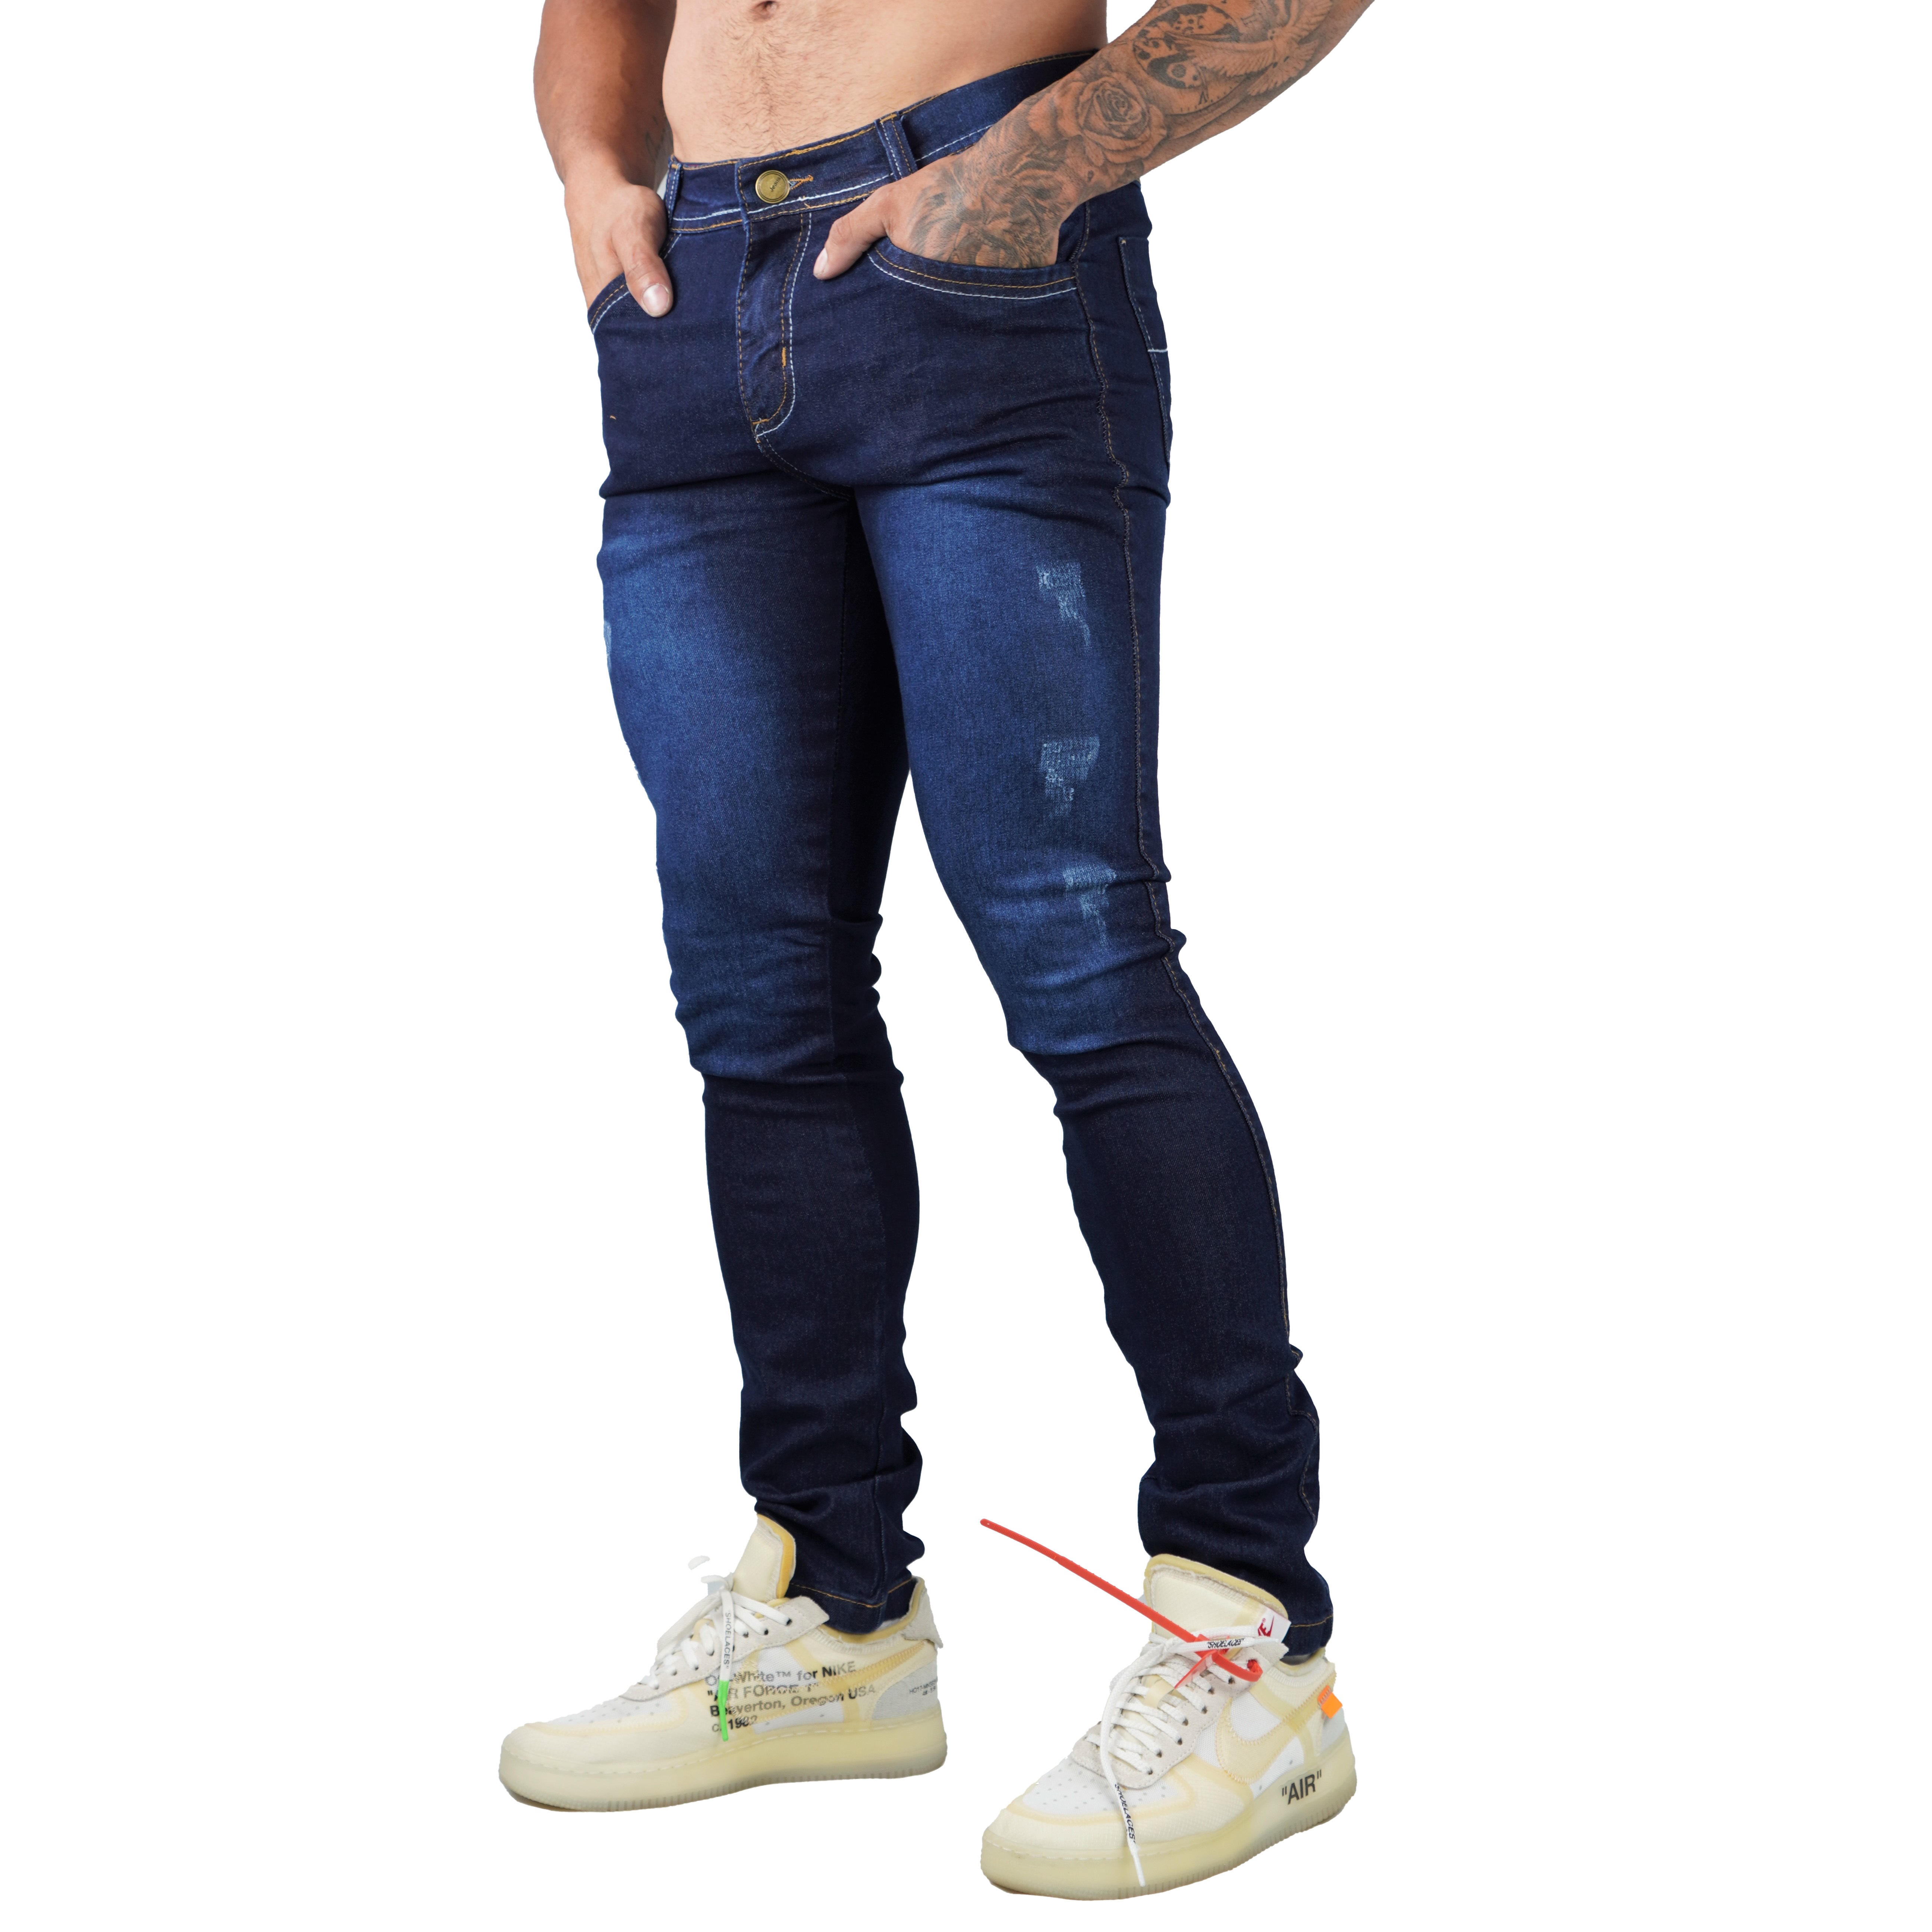 Calça Jeans Masculina Sarja Skinny Slim Com Lycras E Lavagem Escura.  Entrega Rápida Venda Nacional